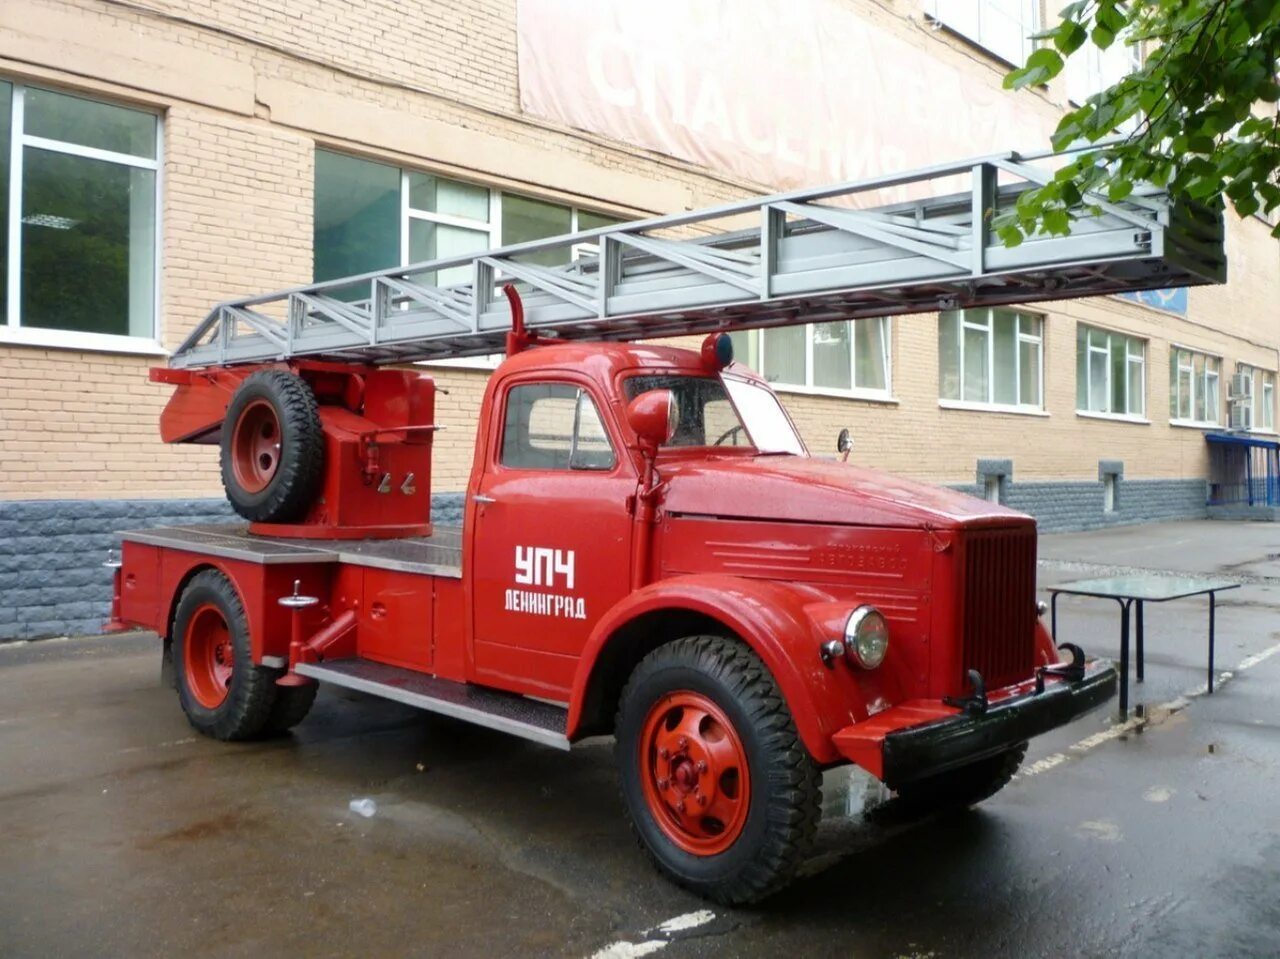 Пожарная машина Вандерберг 1901. Пожарная автолестница АЛГ-17. ГАЗ 51 автолестница. ГАЗ 52 пожарная автолестница.